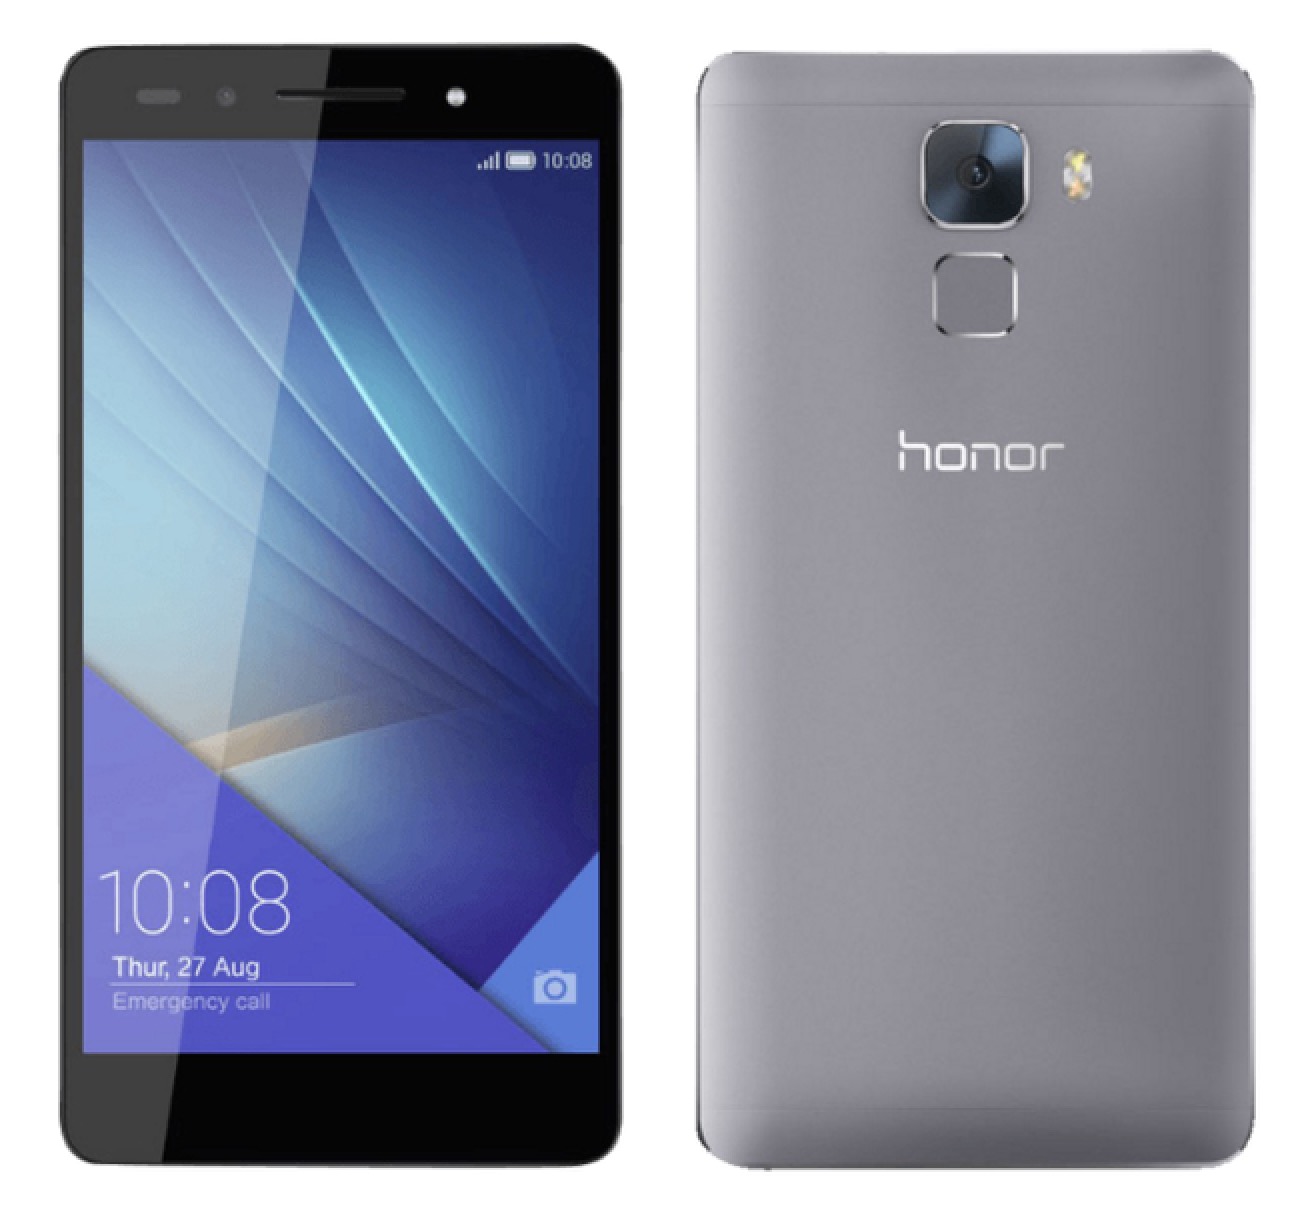 Honor 7 Premium 5,2 Zoll Smartphone mit 32GB für nur 224,10 Euro inkl. Versand